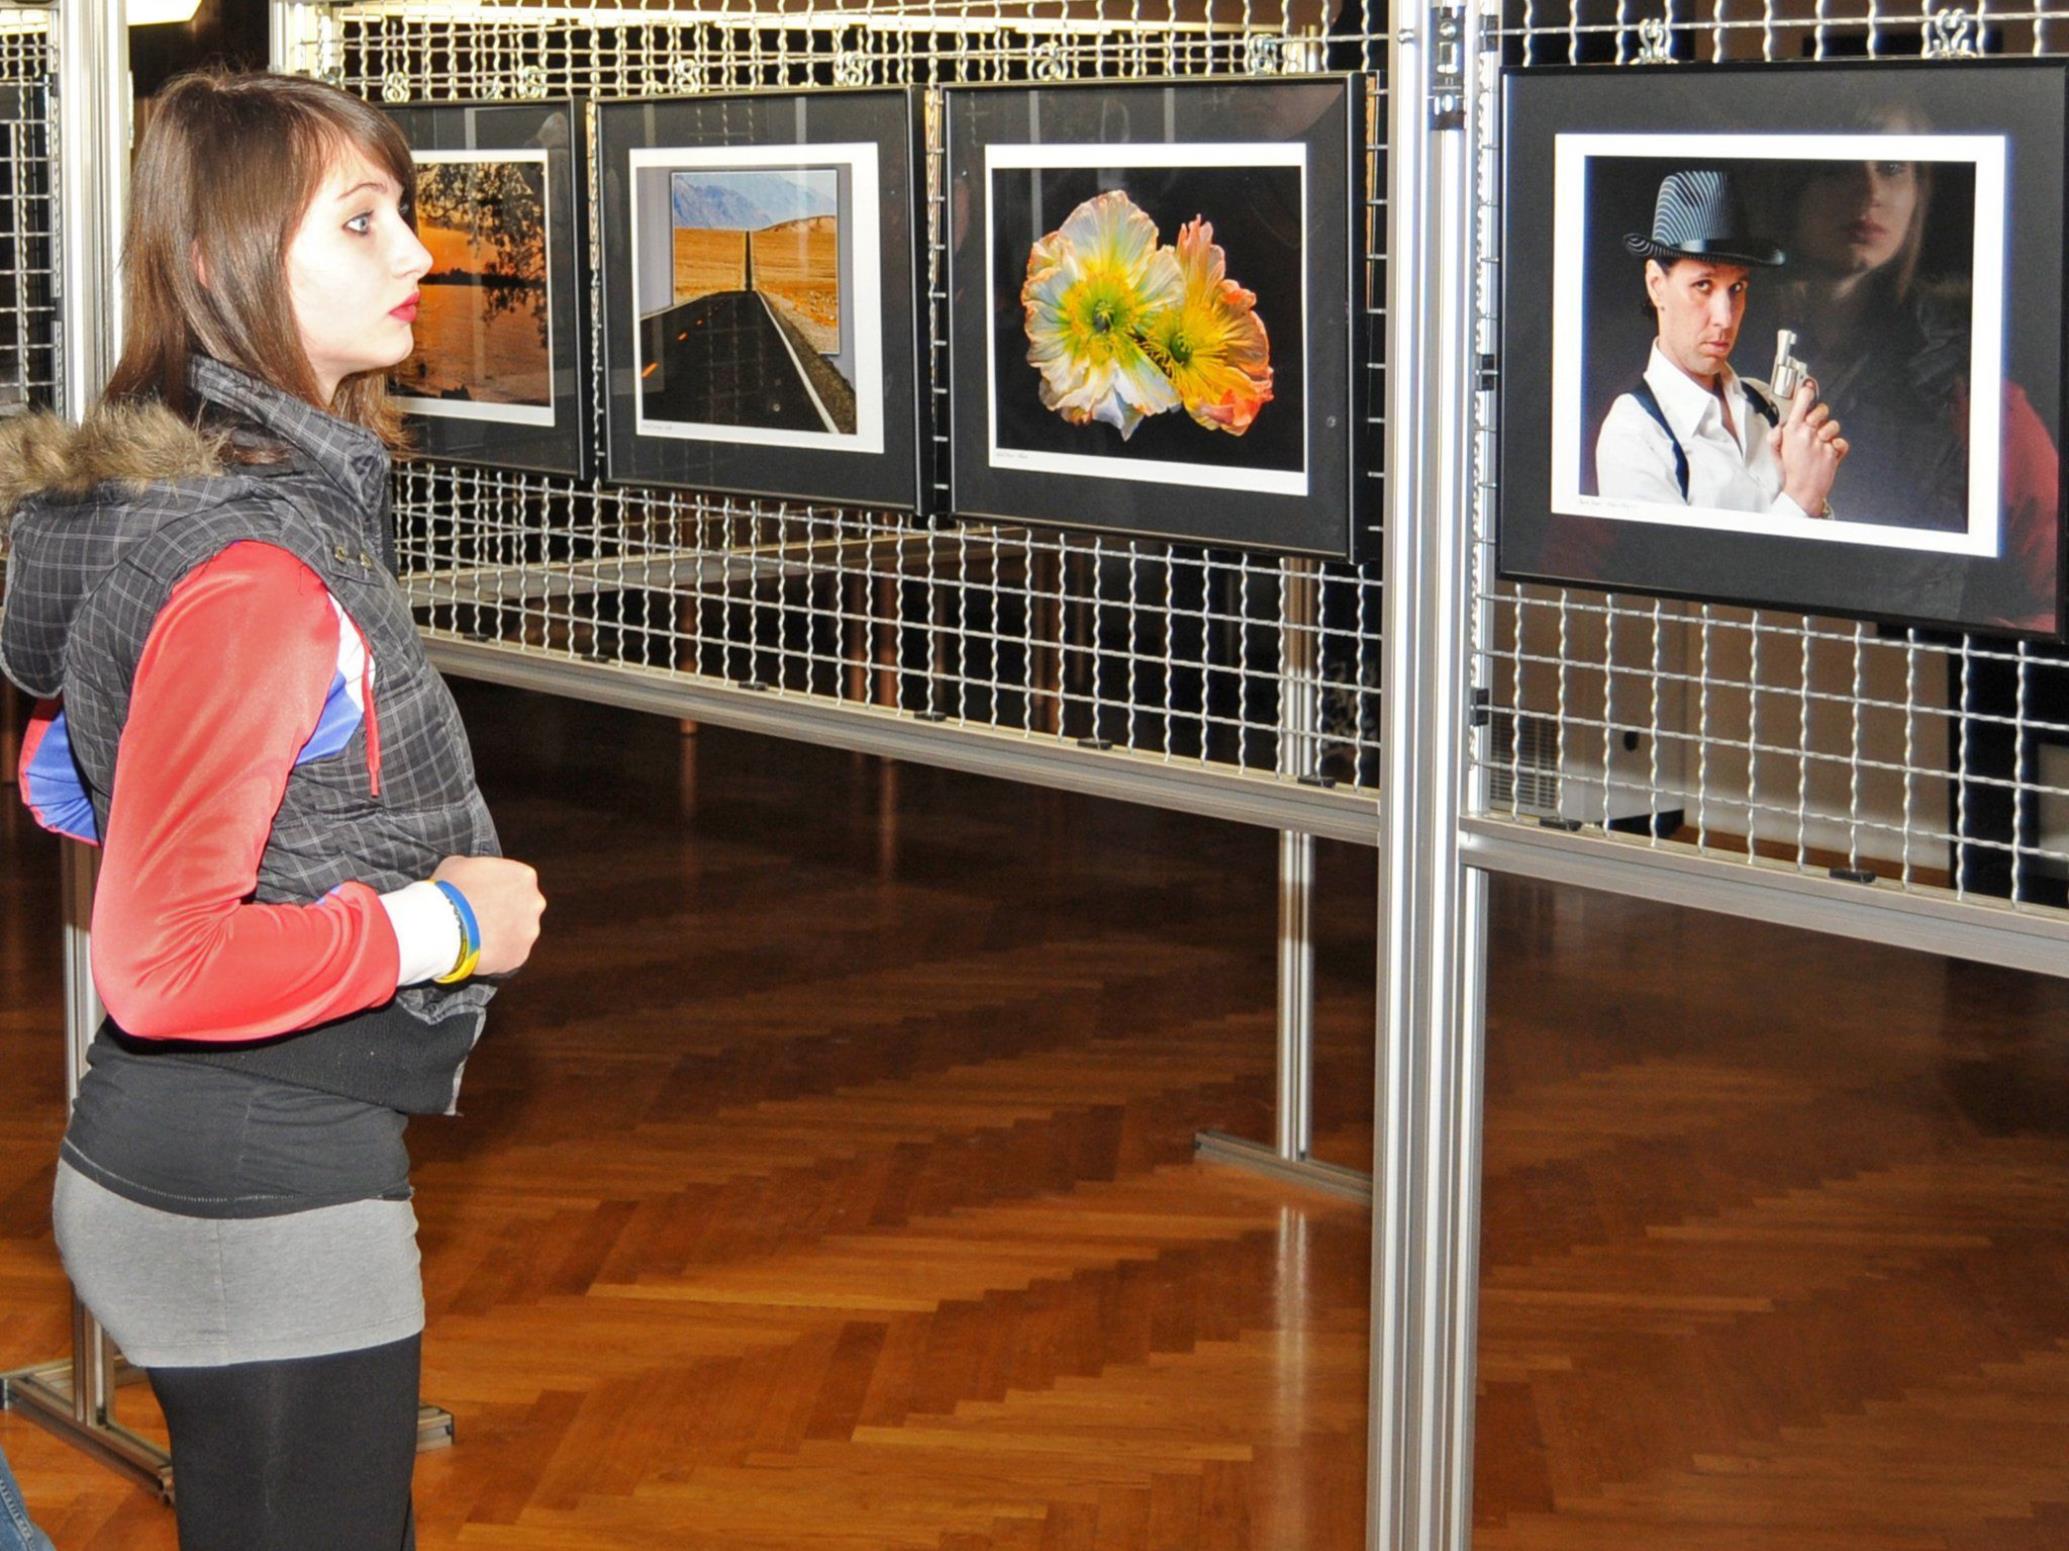 Fotoausstellung im Alemannensaal der Alten Schule in Höchst